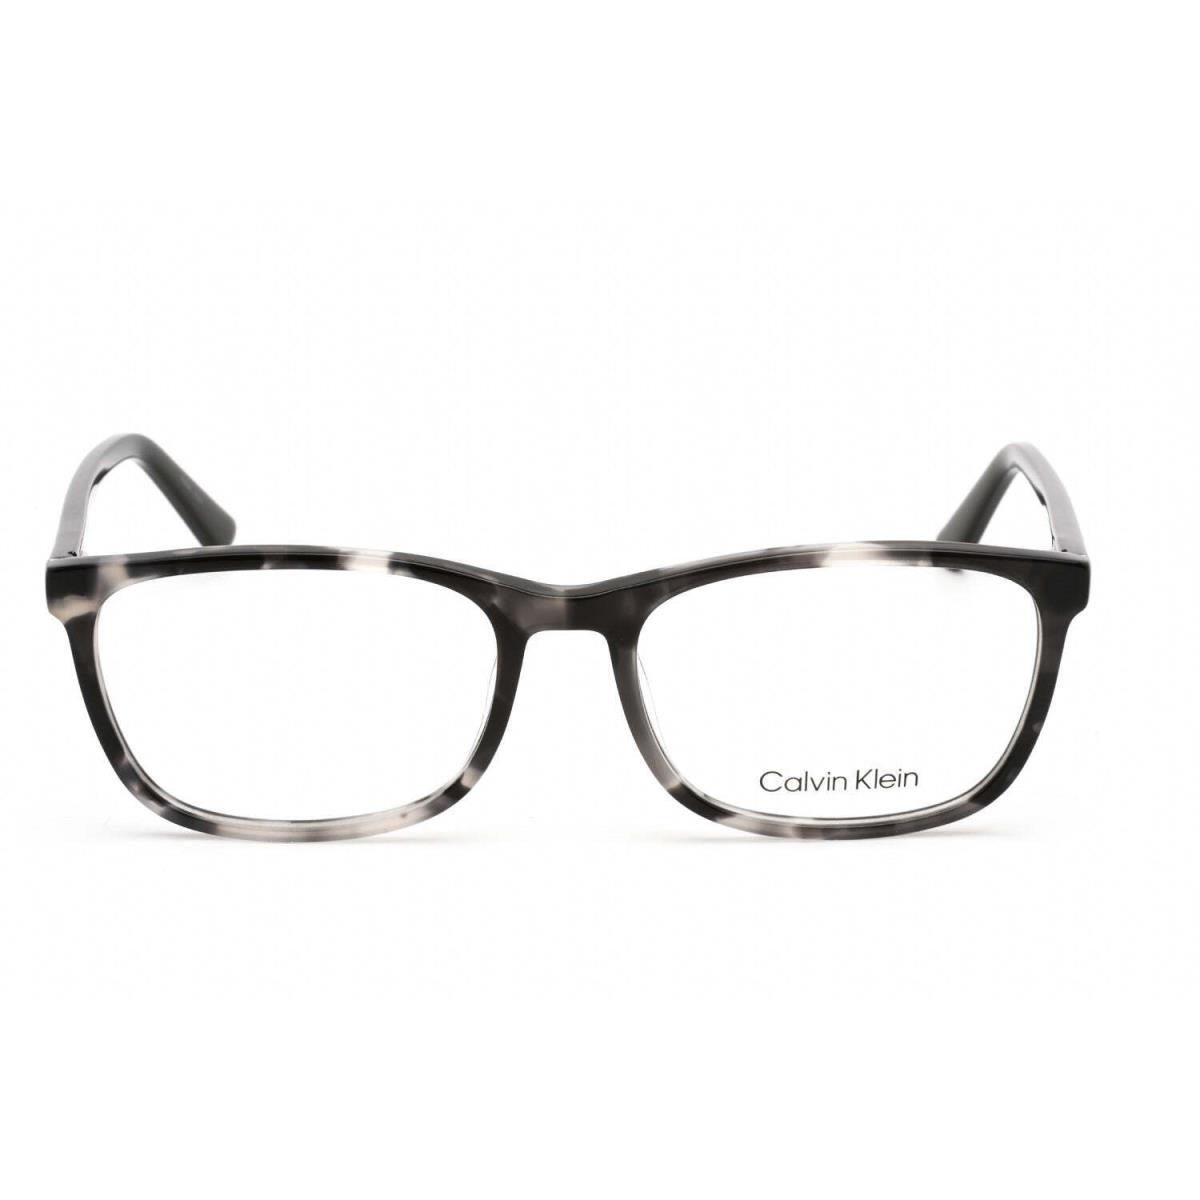 Calvin Klein eyeglasses  - Charcoal Tortoise Frame